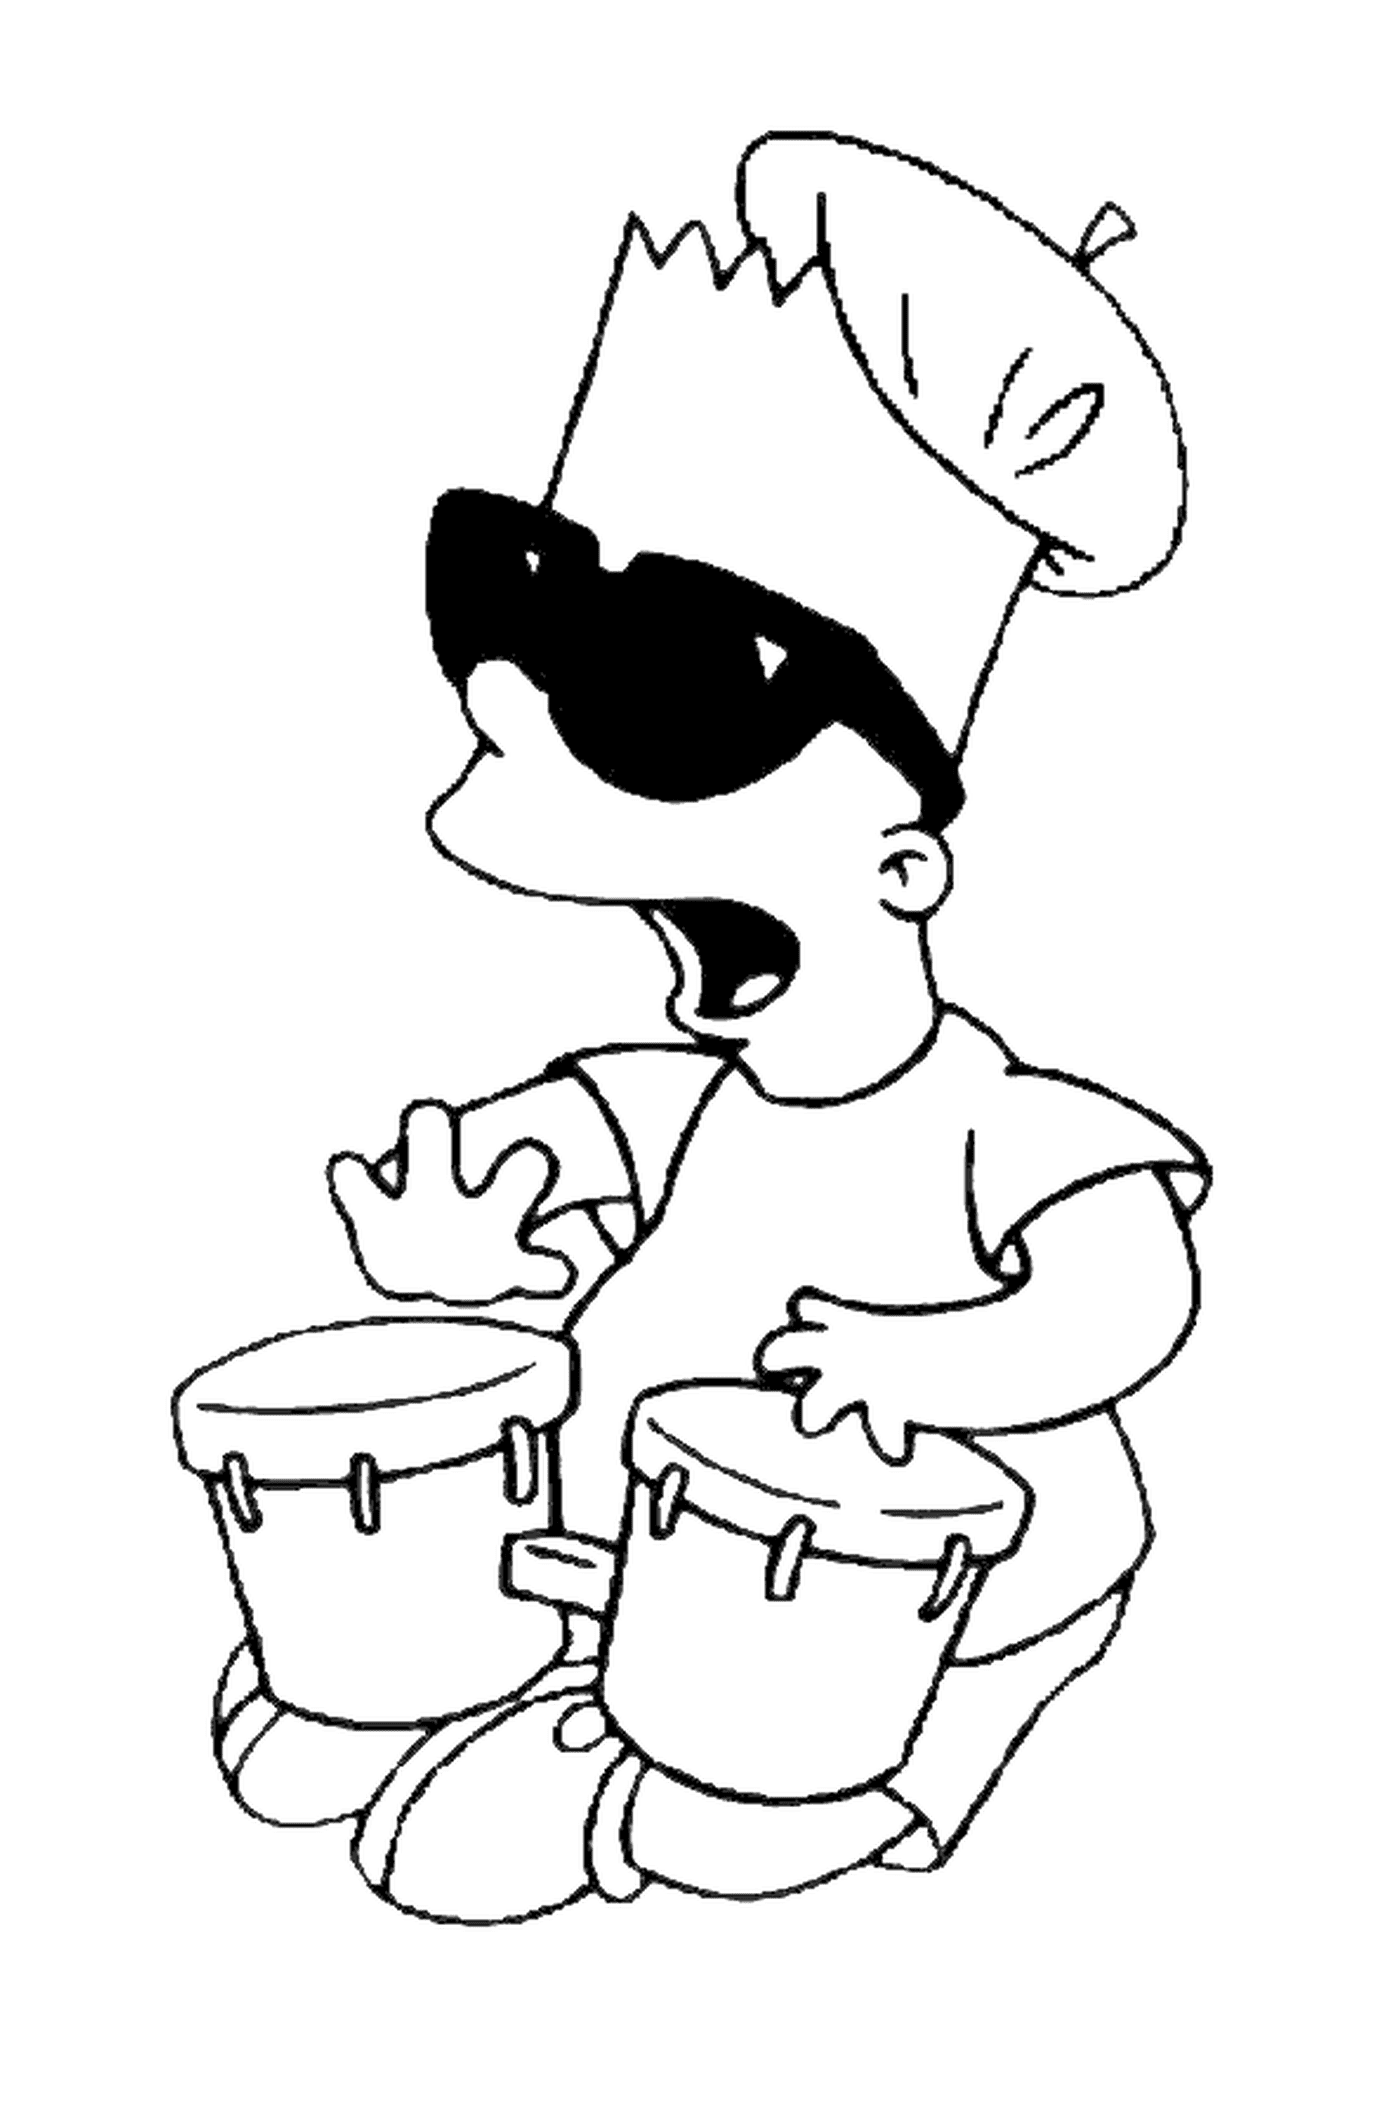  Bart faz música com tam-tams, ninguém tocando um instrumento 